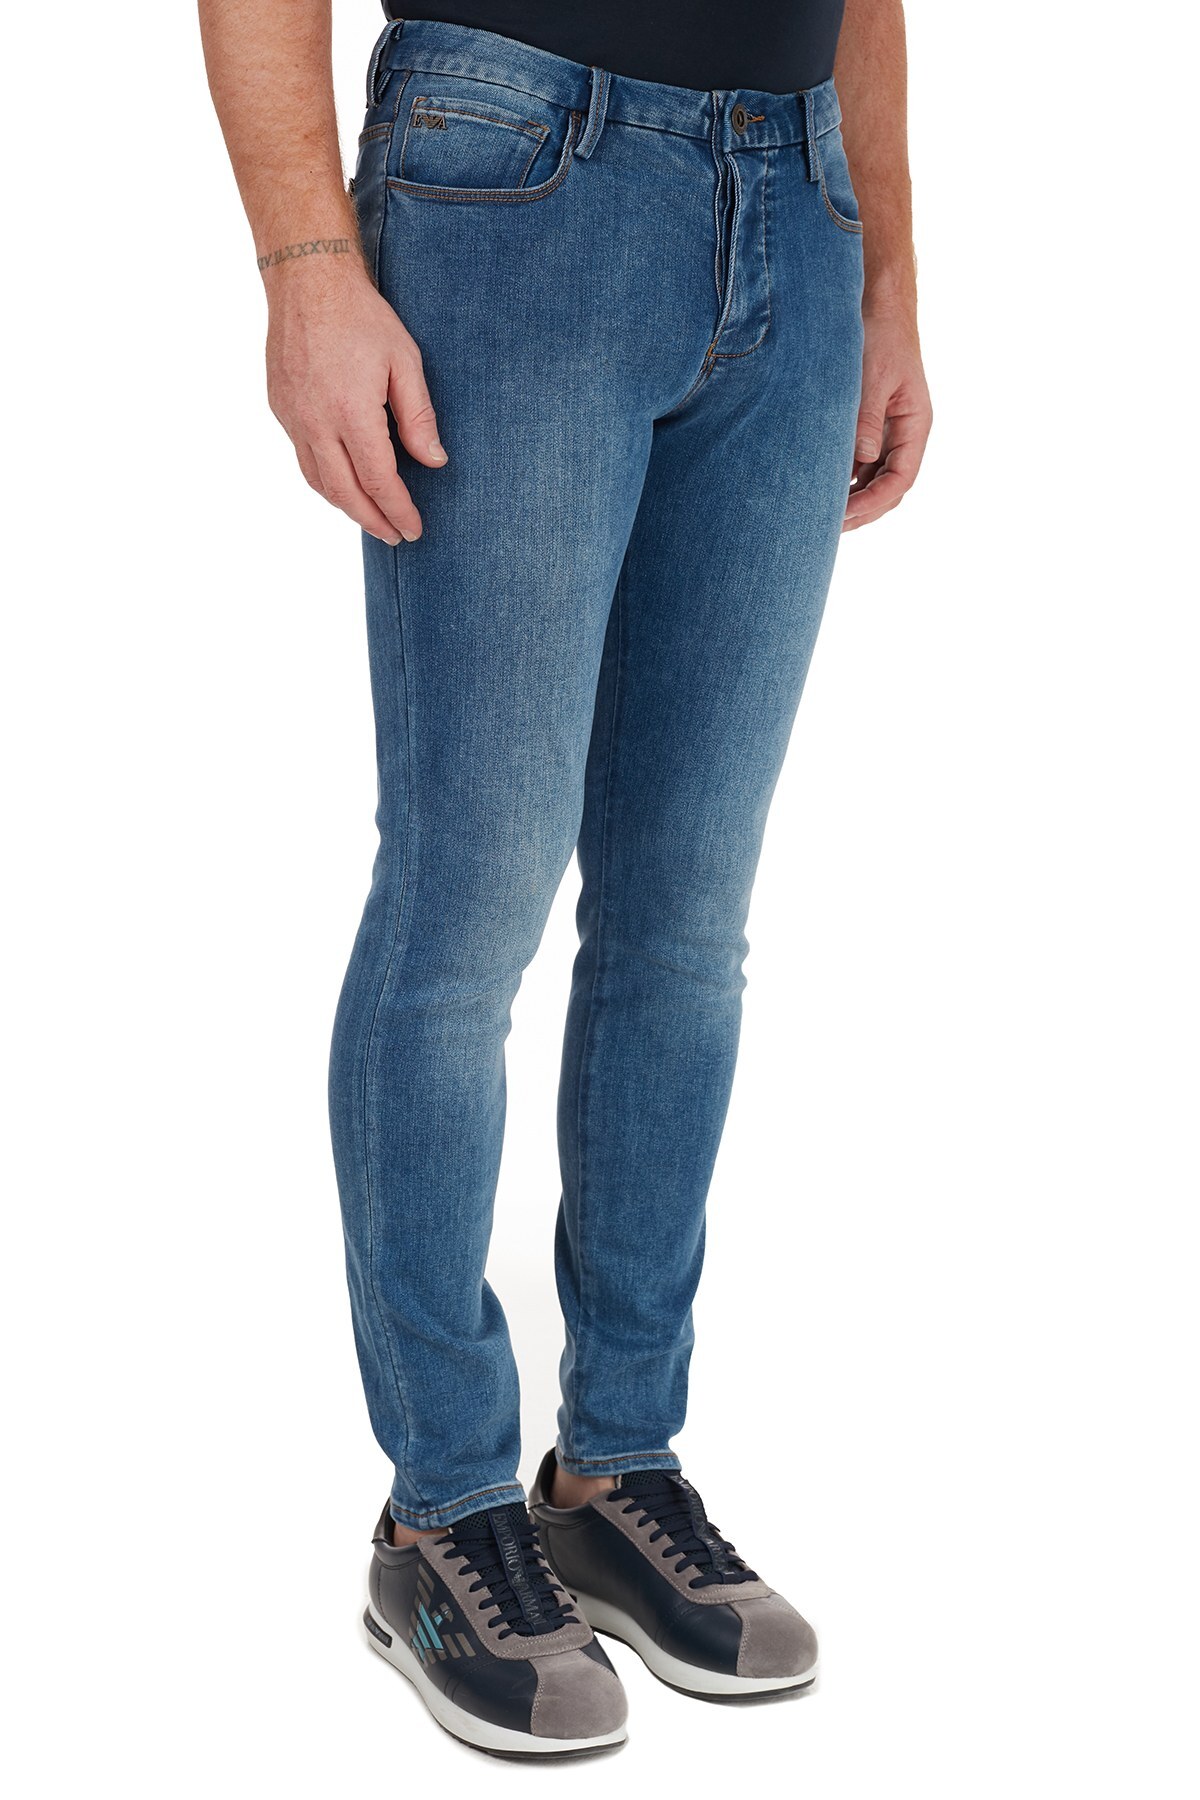 Emporio Armani J11 Jeans Erkek Kot Pantolon 6H1J11 1DPFZ 0942 LACİVERT